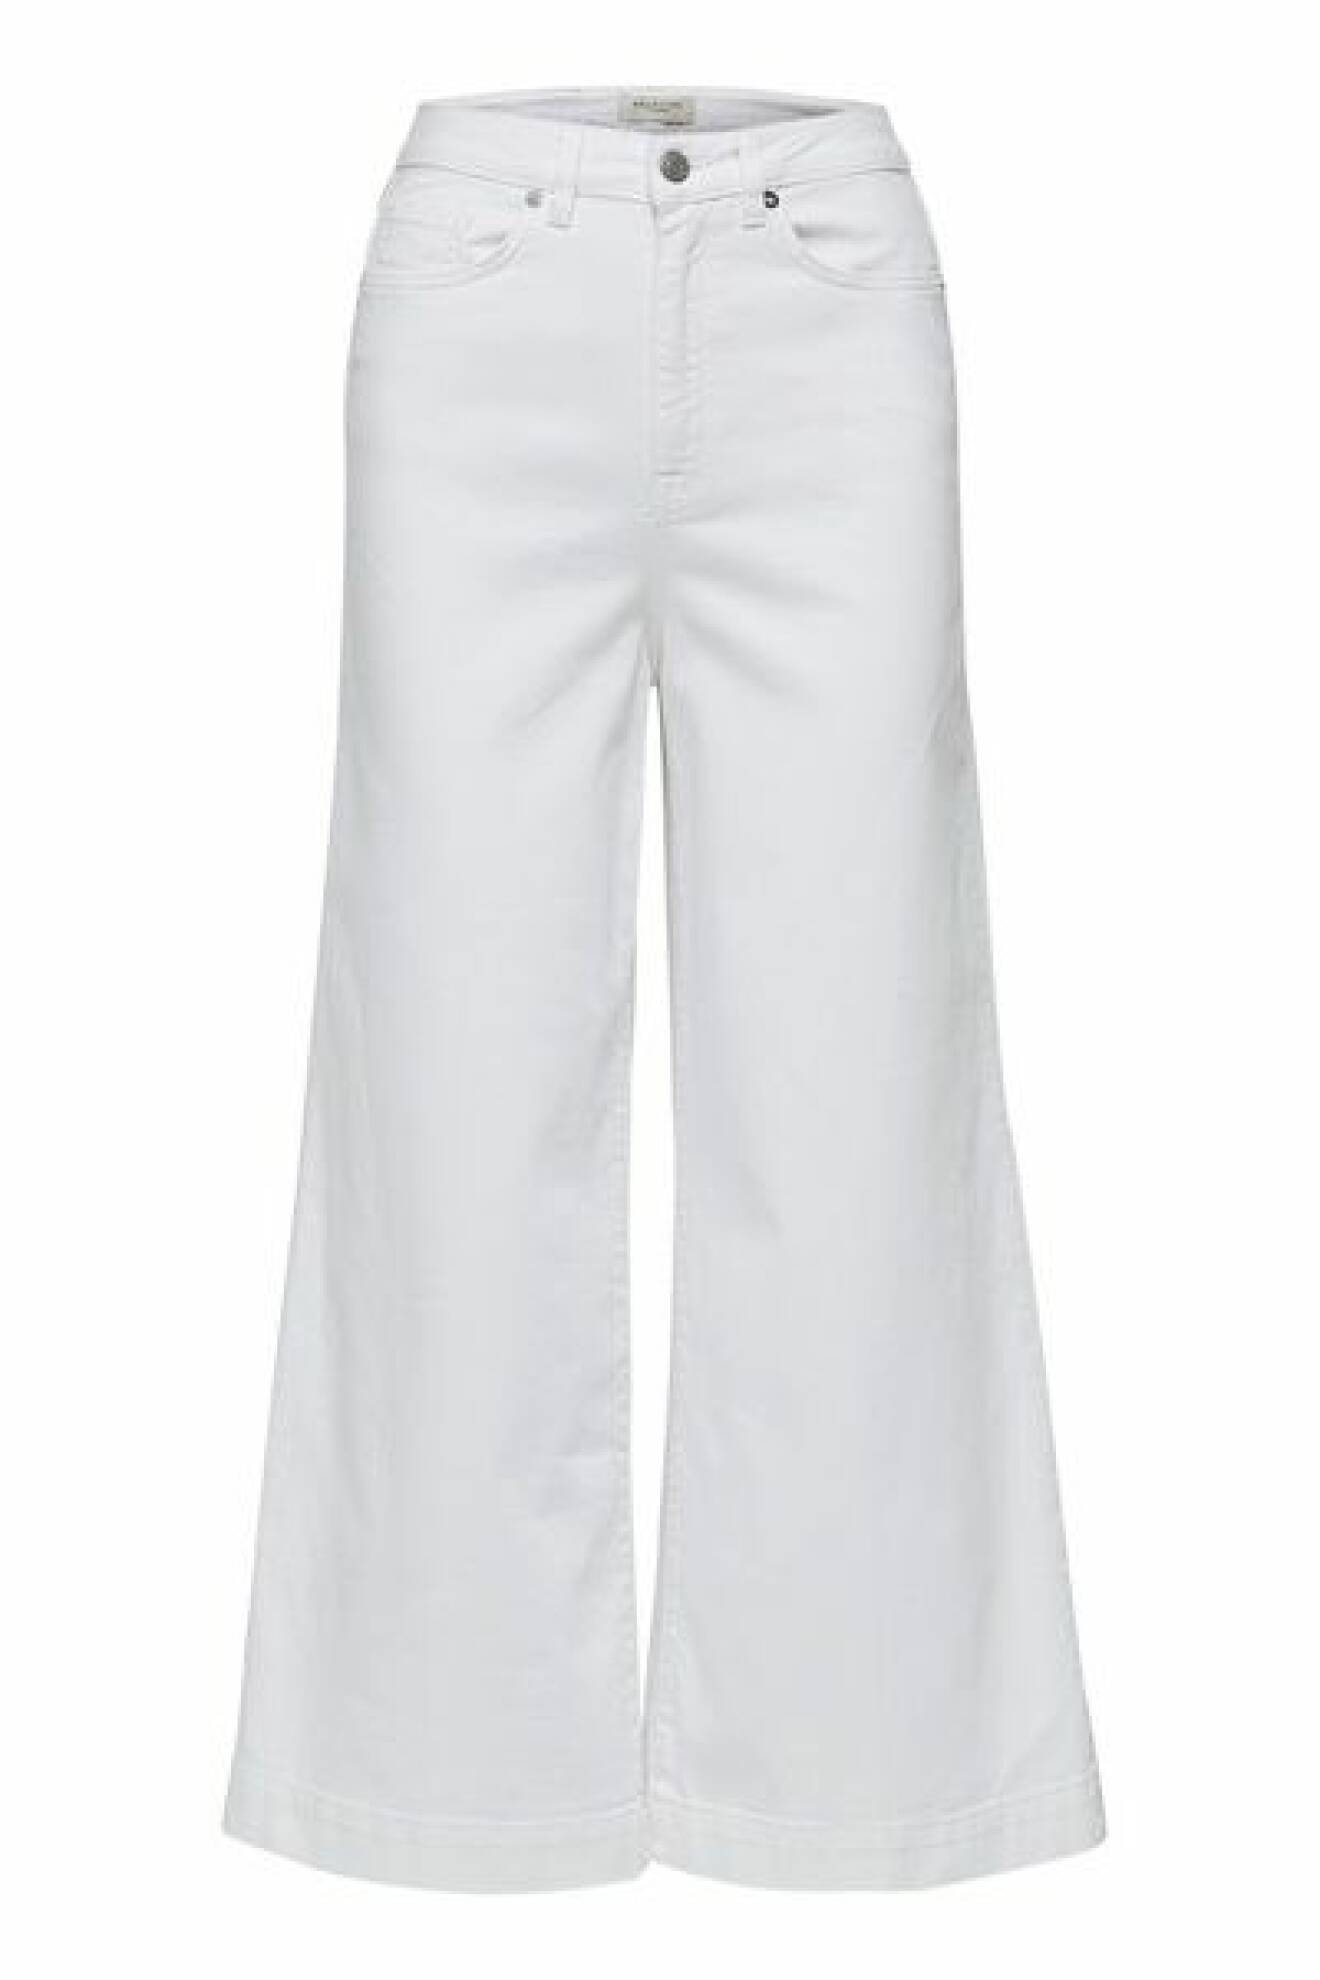 Vita jeans i ankellängd med stora vida ben, från Selected Femme. Shoppa jeansen här!